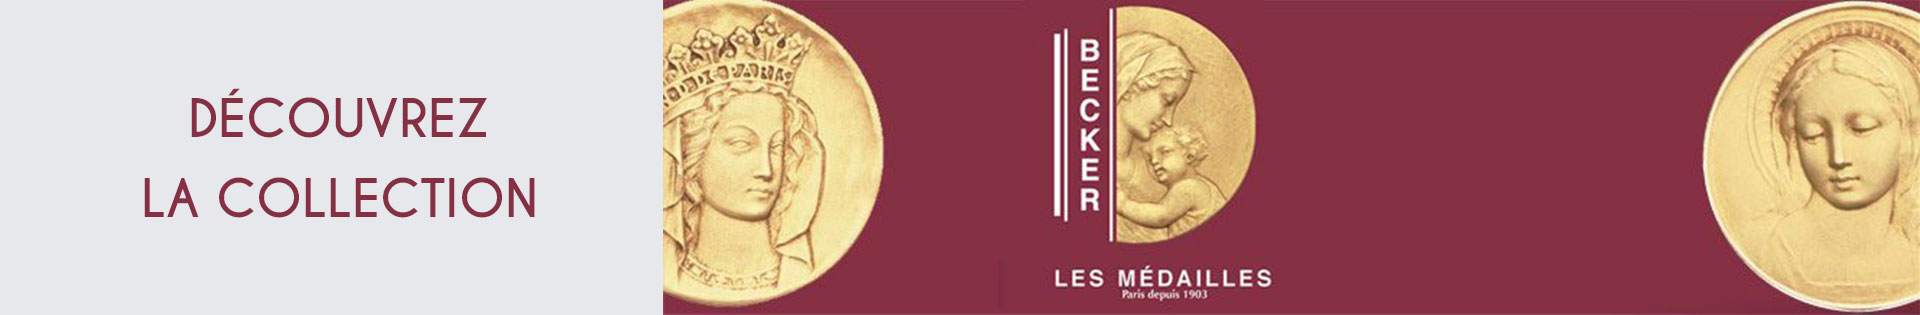 Médaille et symbole - Becker - Vierge